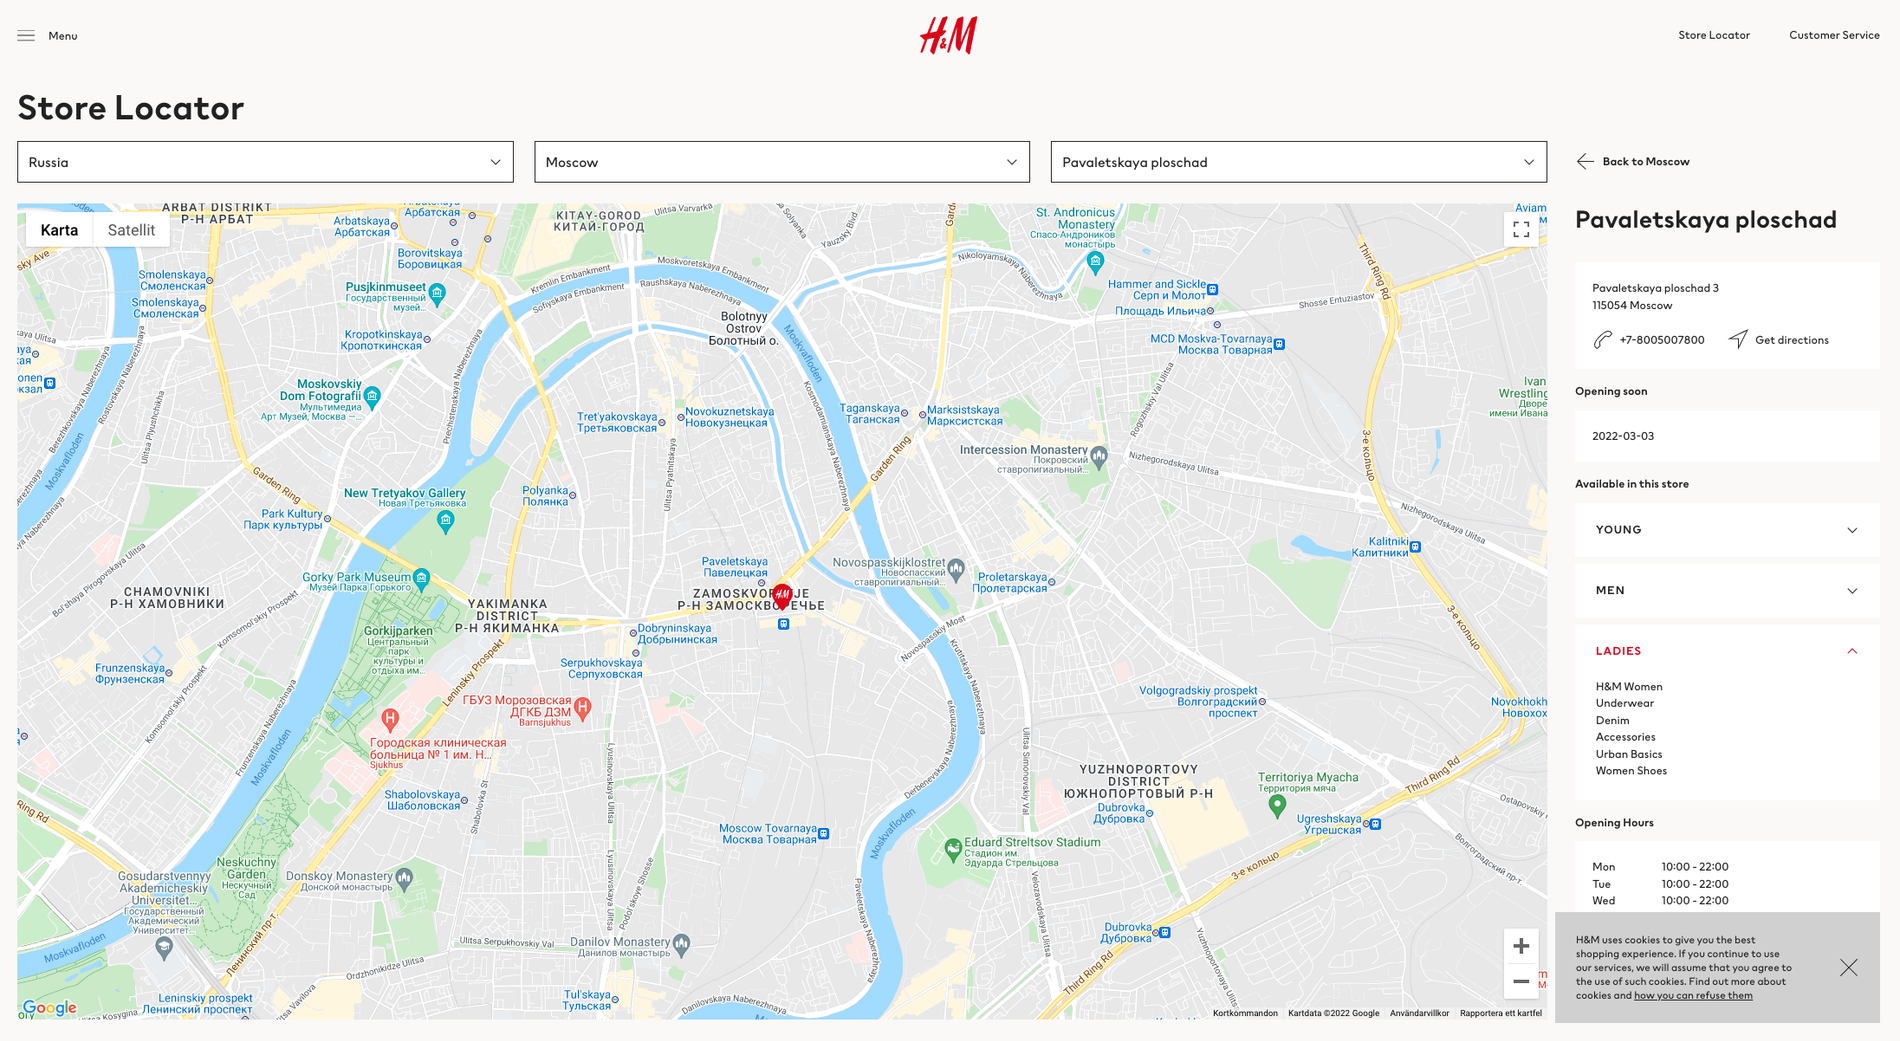 H&M:s butikinformation om öppningen i Moskva: ”Opening soon”